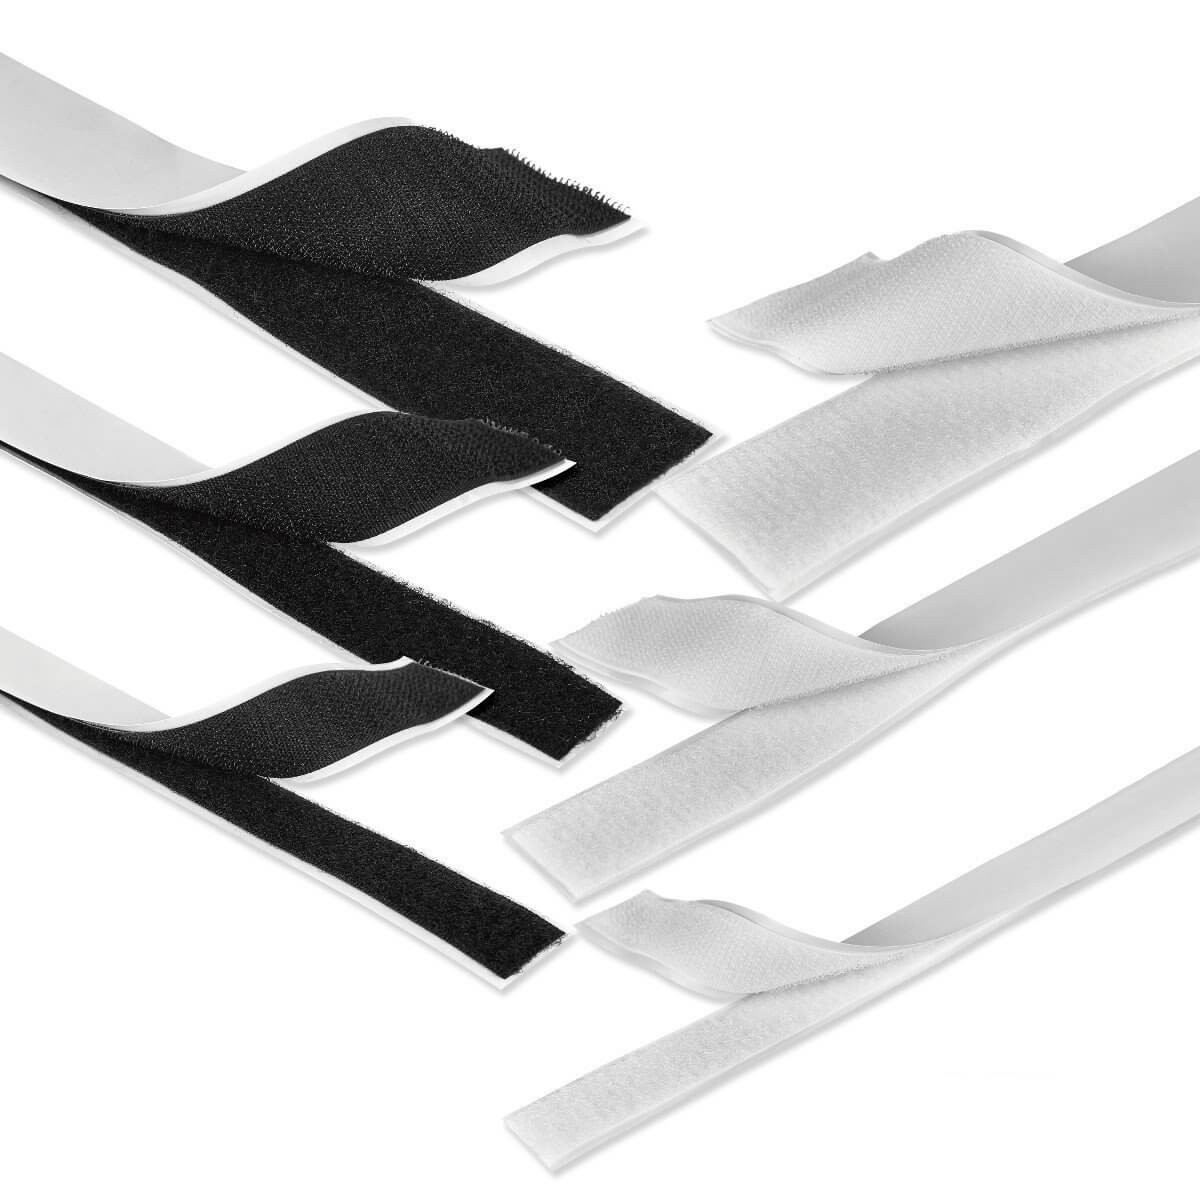 Klettband weiß 40mm breit je 1m Klettverschluss Haken und Flauschband 